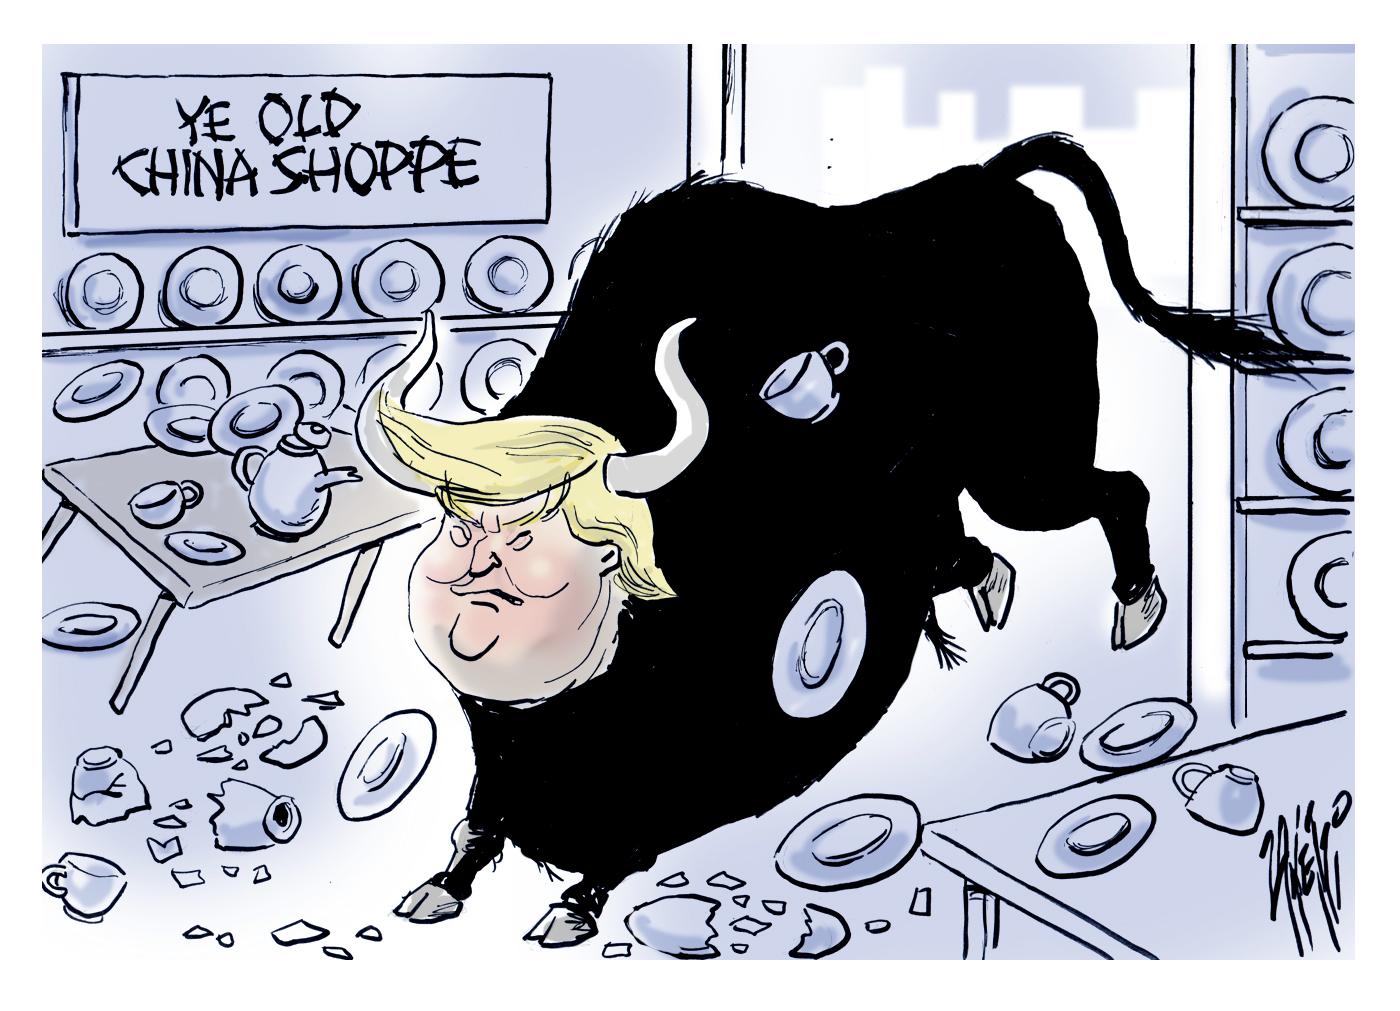 Trump in a China shop.